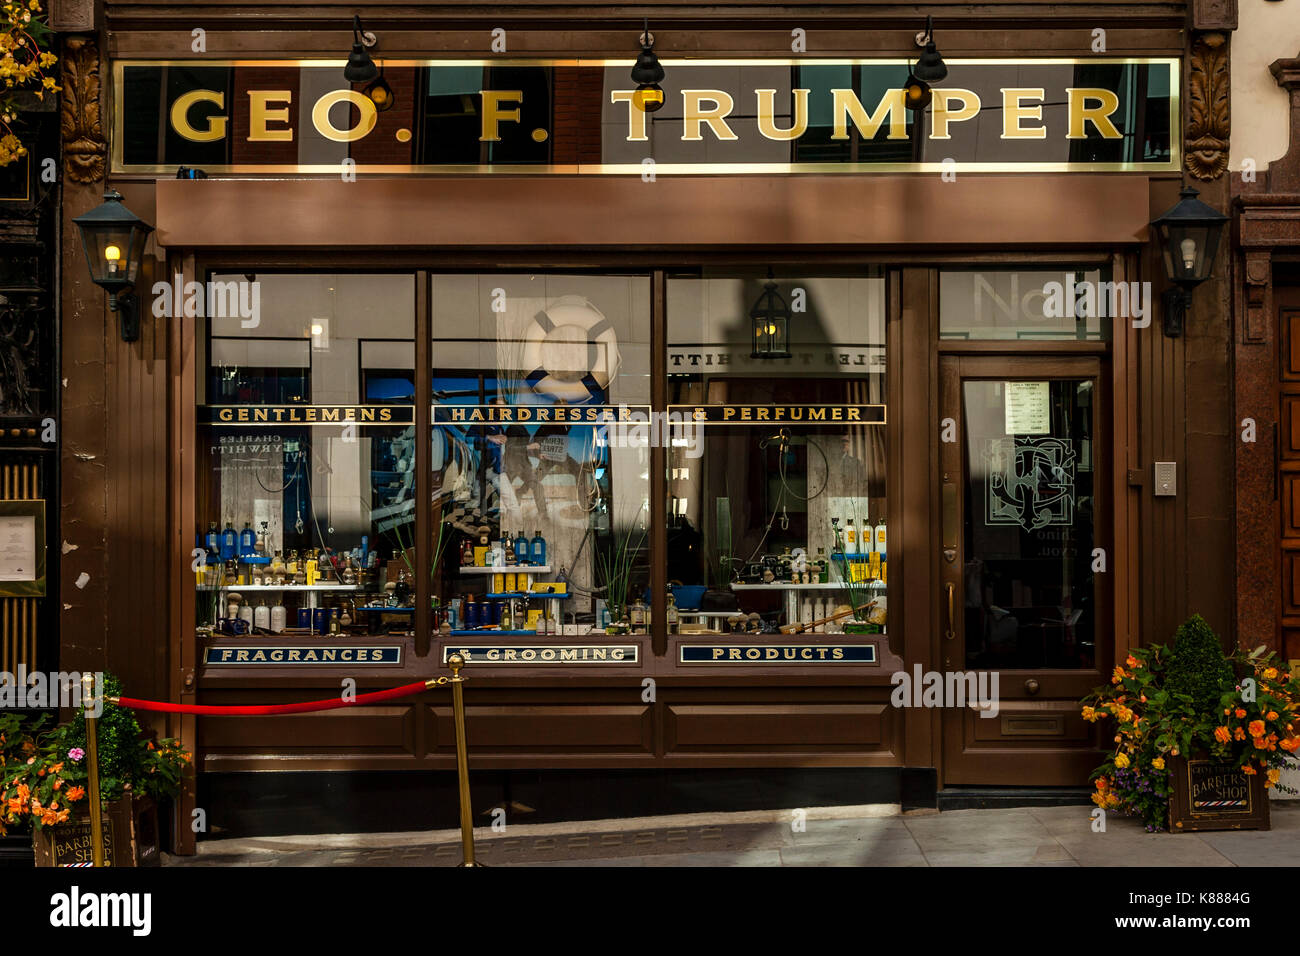 Geo.F.Trumper, Gentlemans Barber, St James's, London, UK Stock Photo